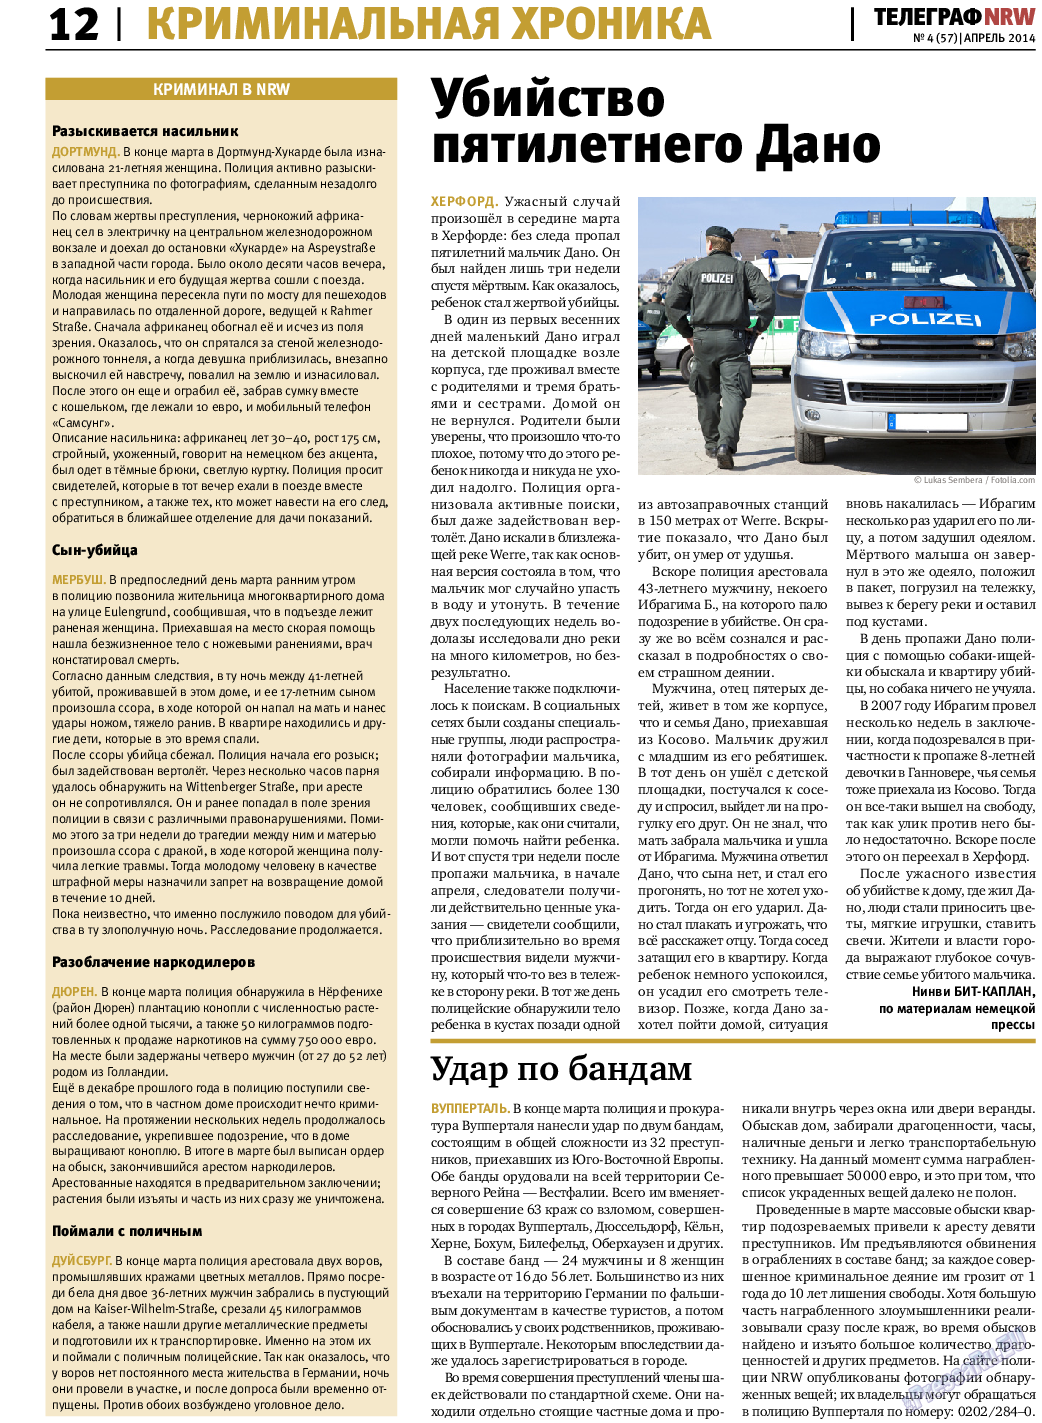 Телеграф NRW (газета). 2014 год, номер 4, стр. 12